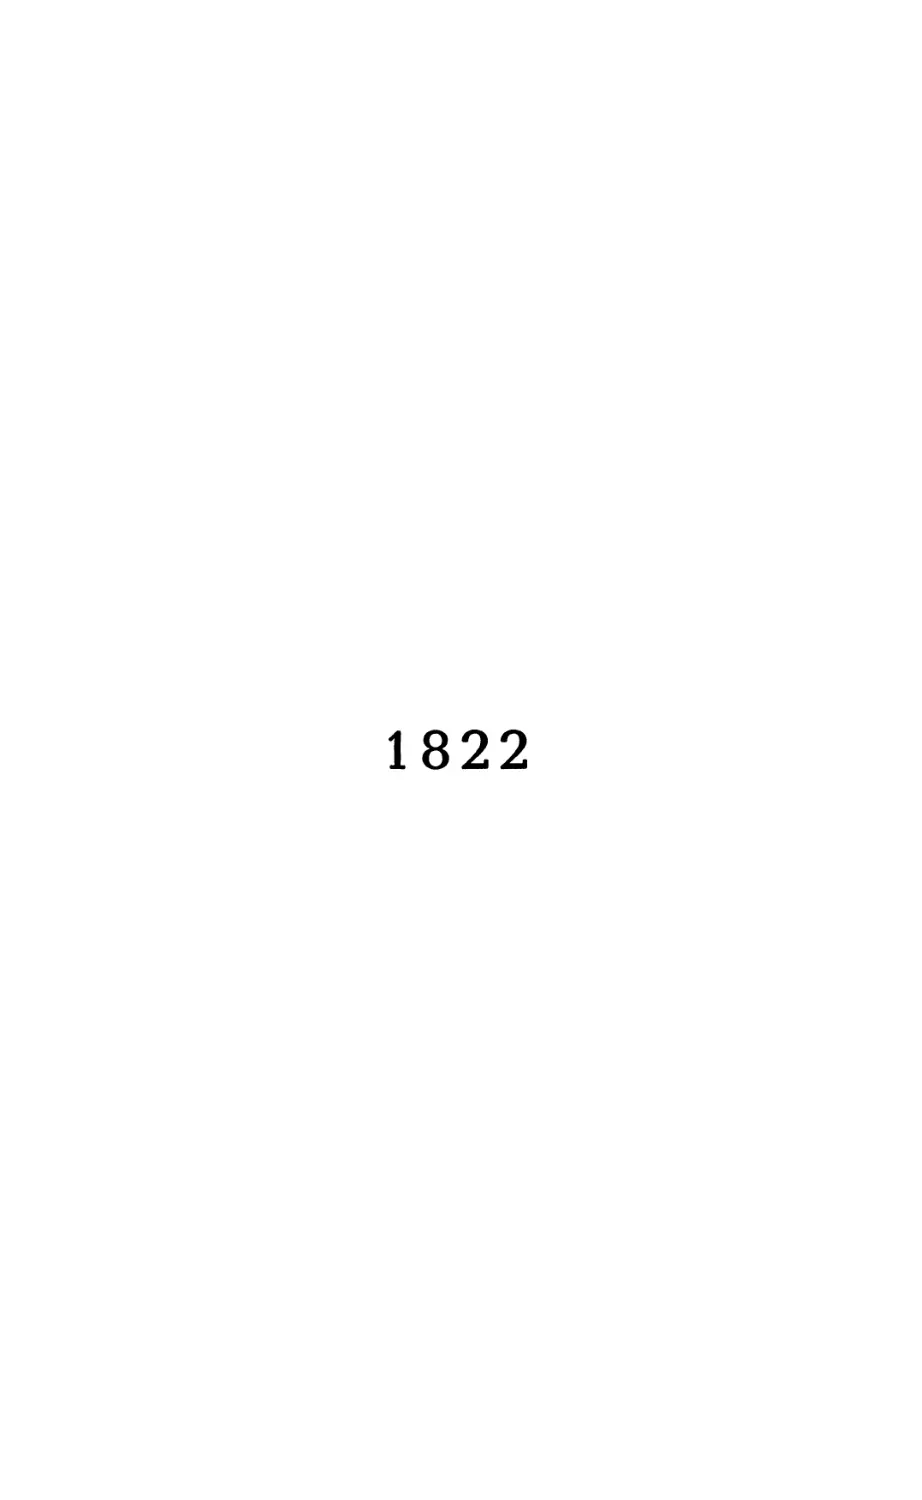 1822